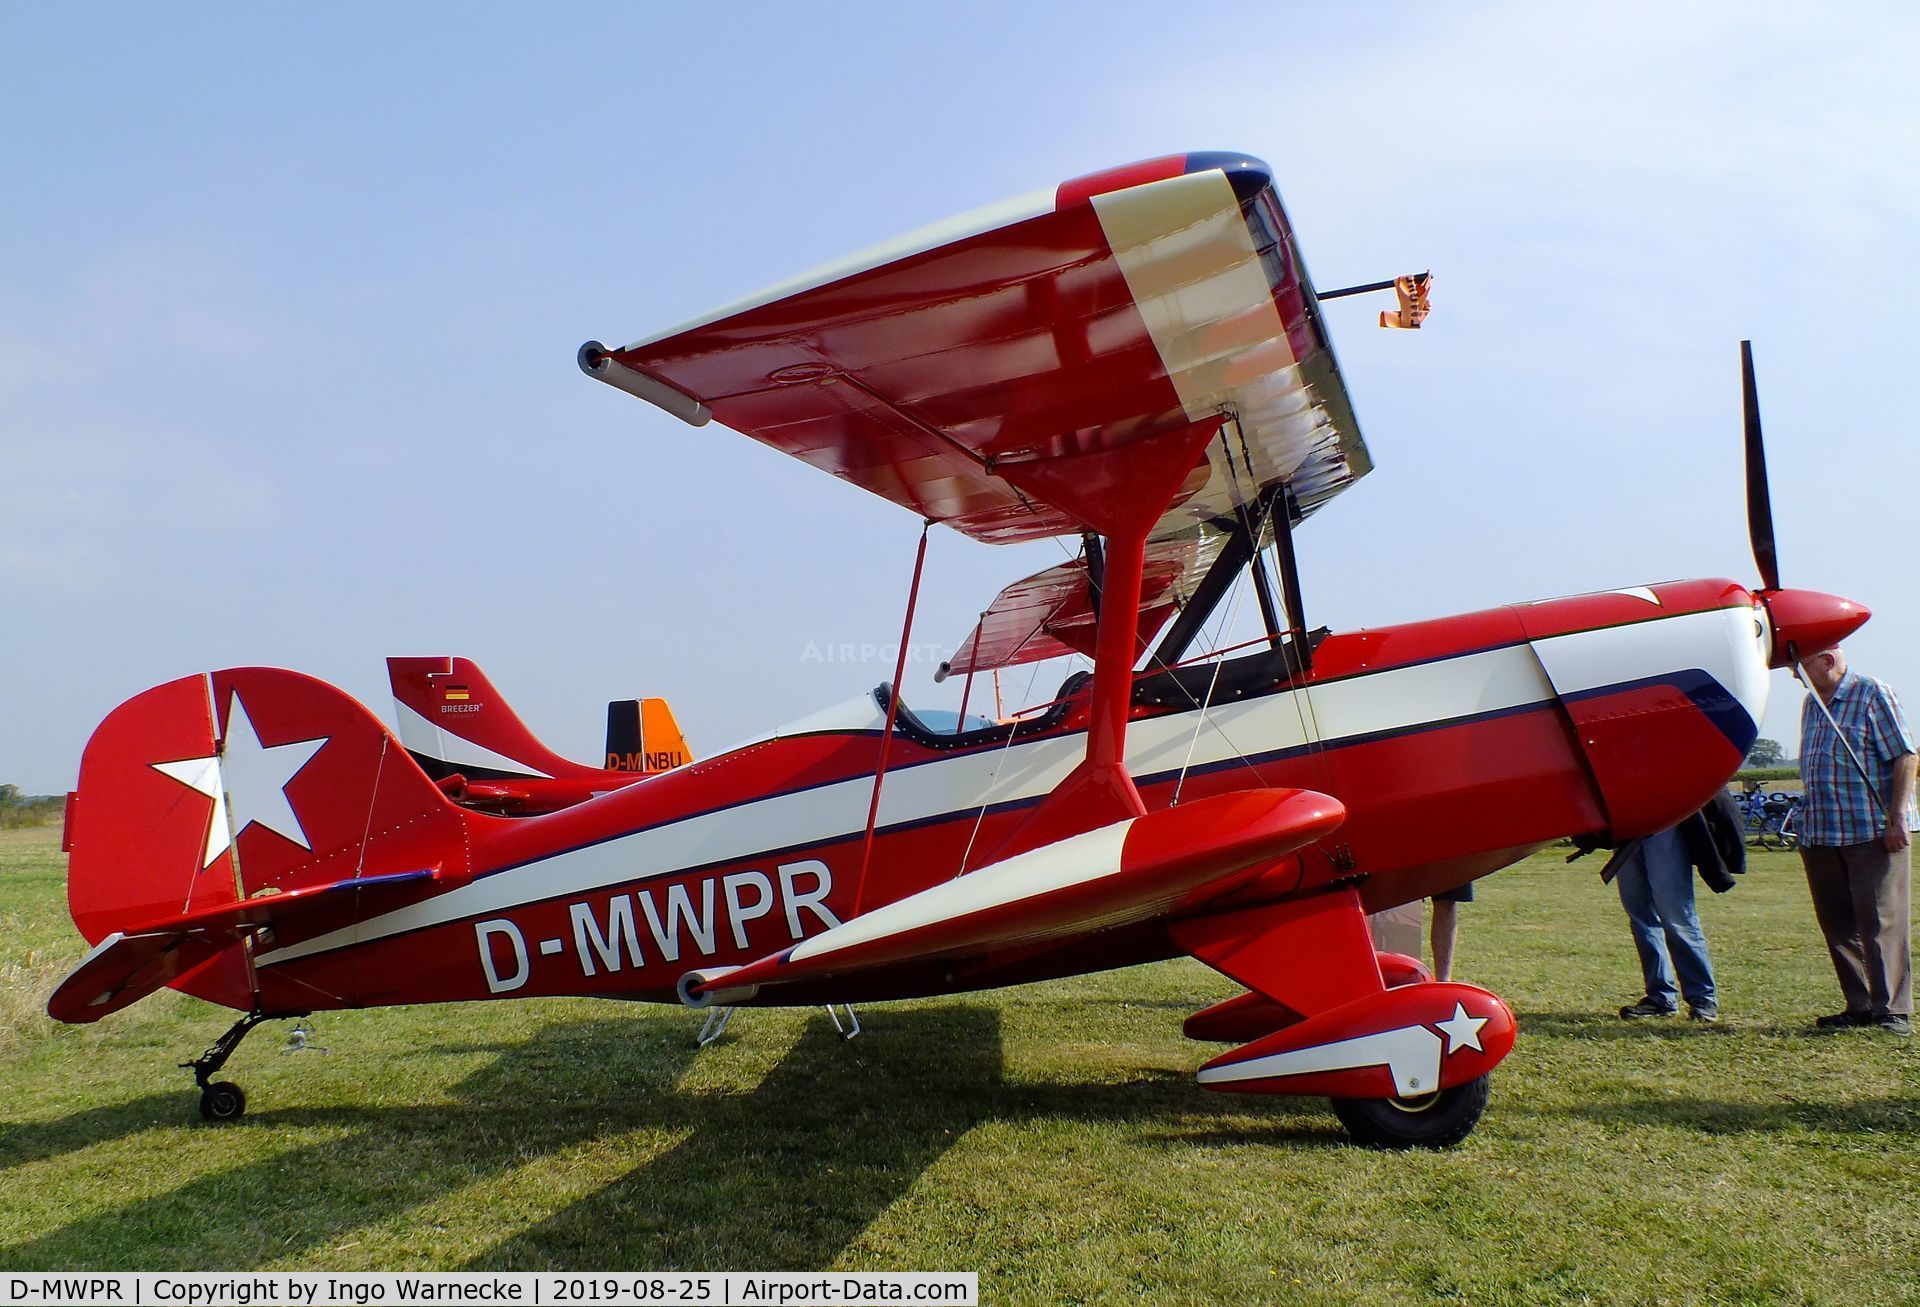 D-MWPR, Murphy Renagade Spirit 472 C/N Not found (D-MWPR), Murphy Renegade at the 2019 Flugplatz-Wiesenfest airfield display at Weilerswist-Müggenhausen ultralight airfield